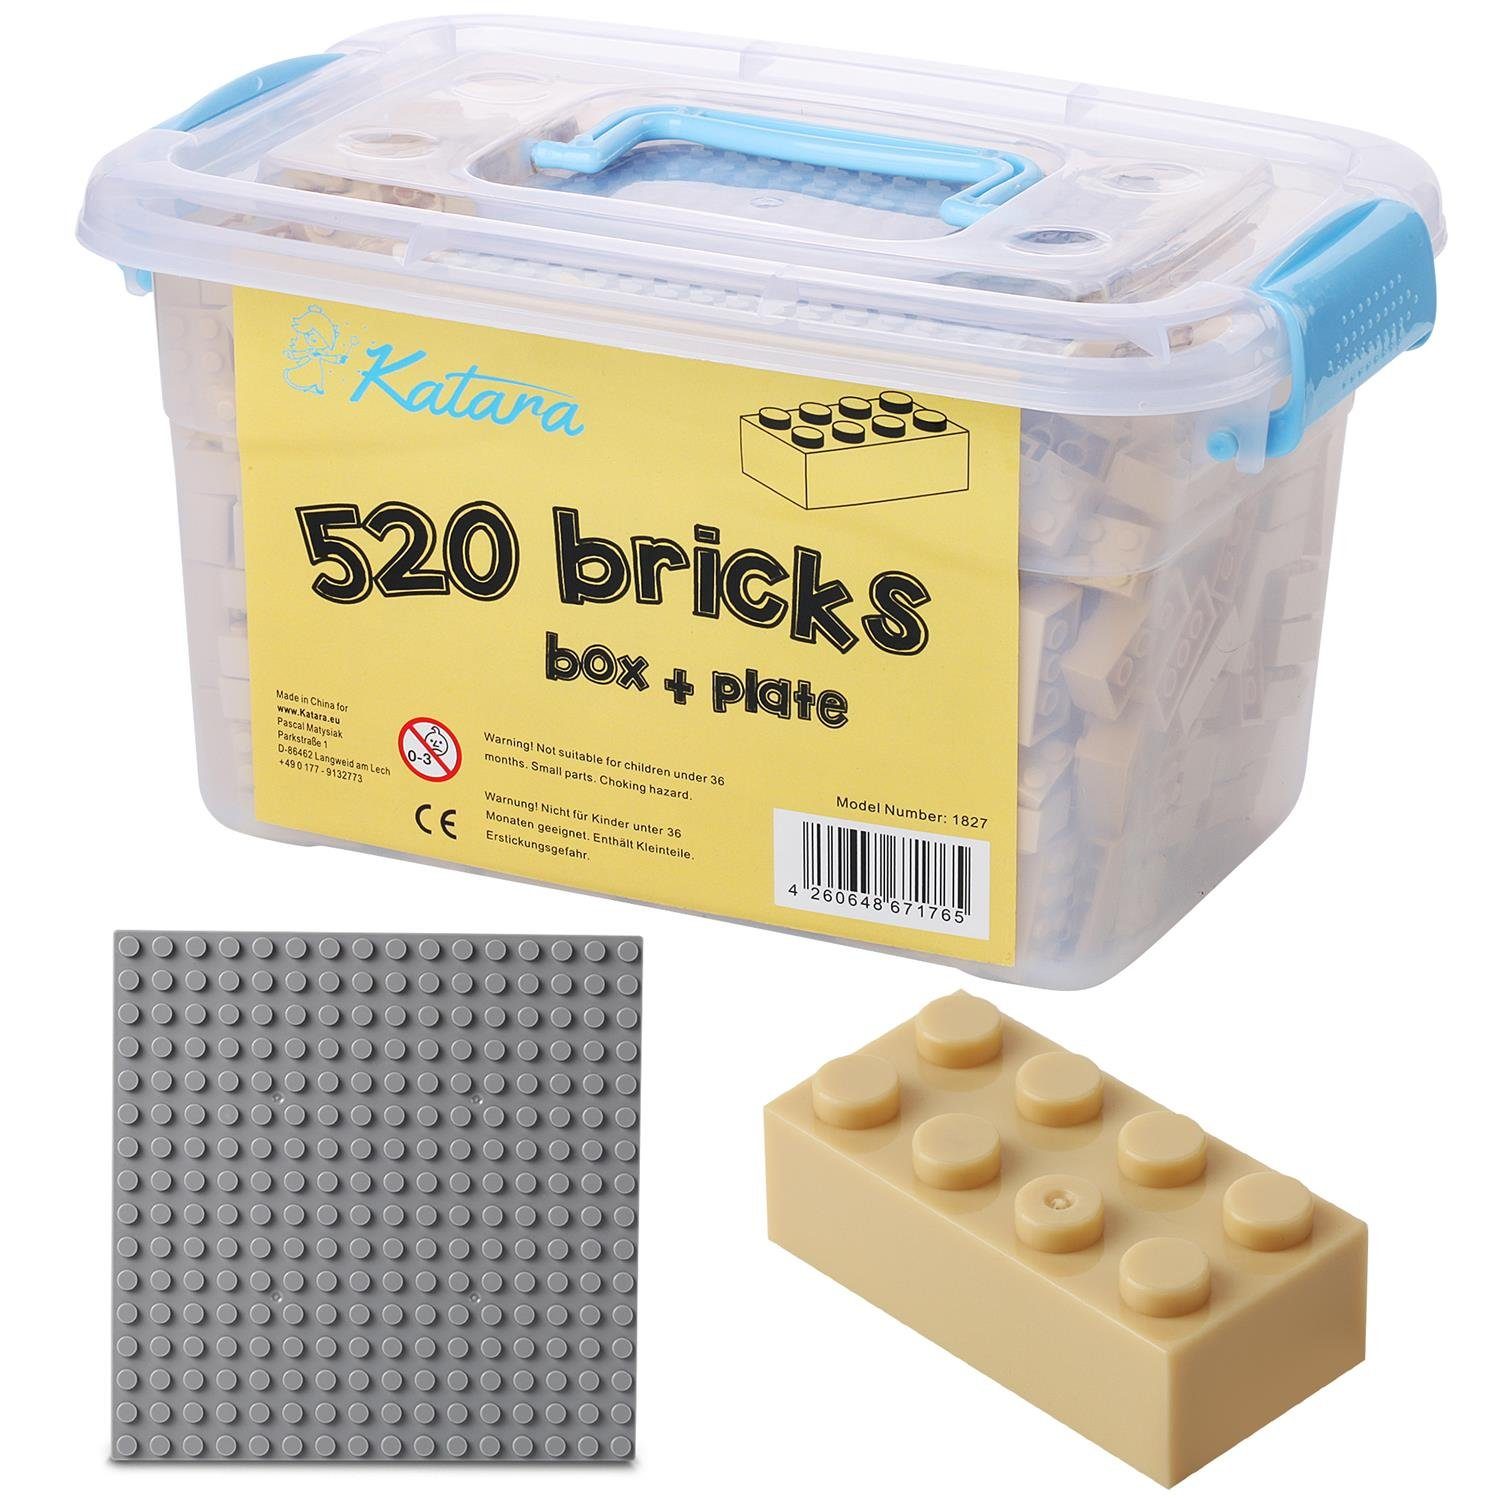 Katara Konstruktionsspielsteine Bausteine Box-Set mit 520 Steinen + Platte + Box, (3er Set), Kompatibel zu allen Anderen Herstellern - verschiedene Farben beige